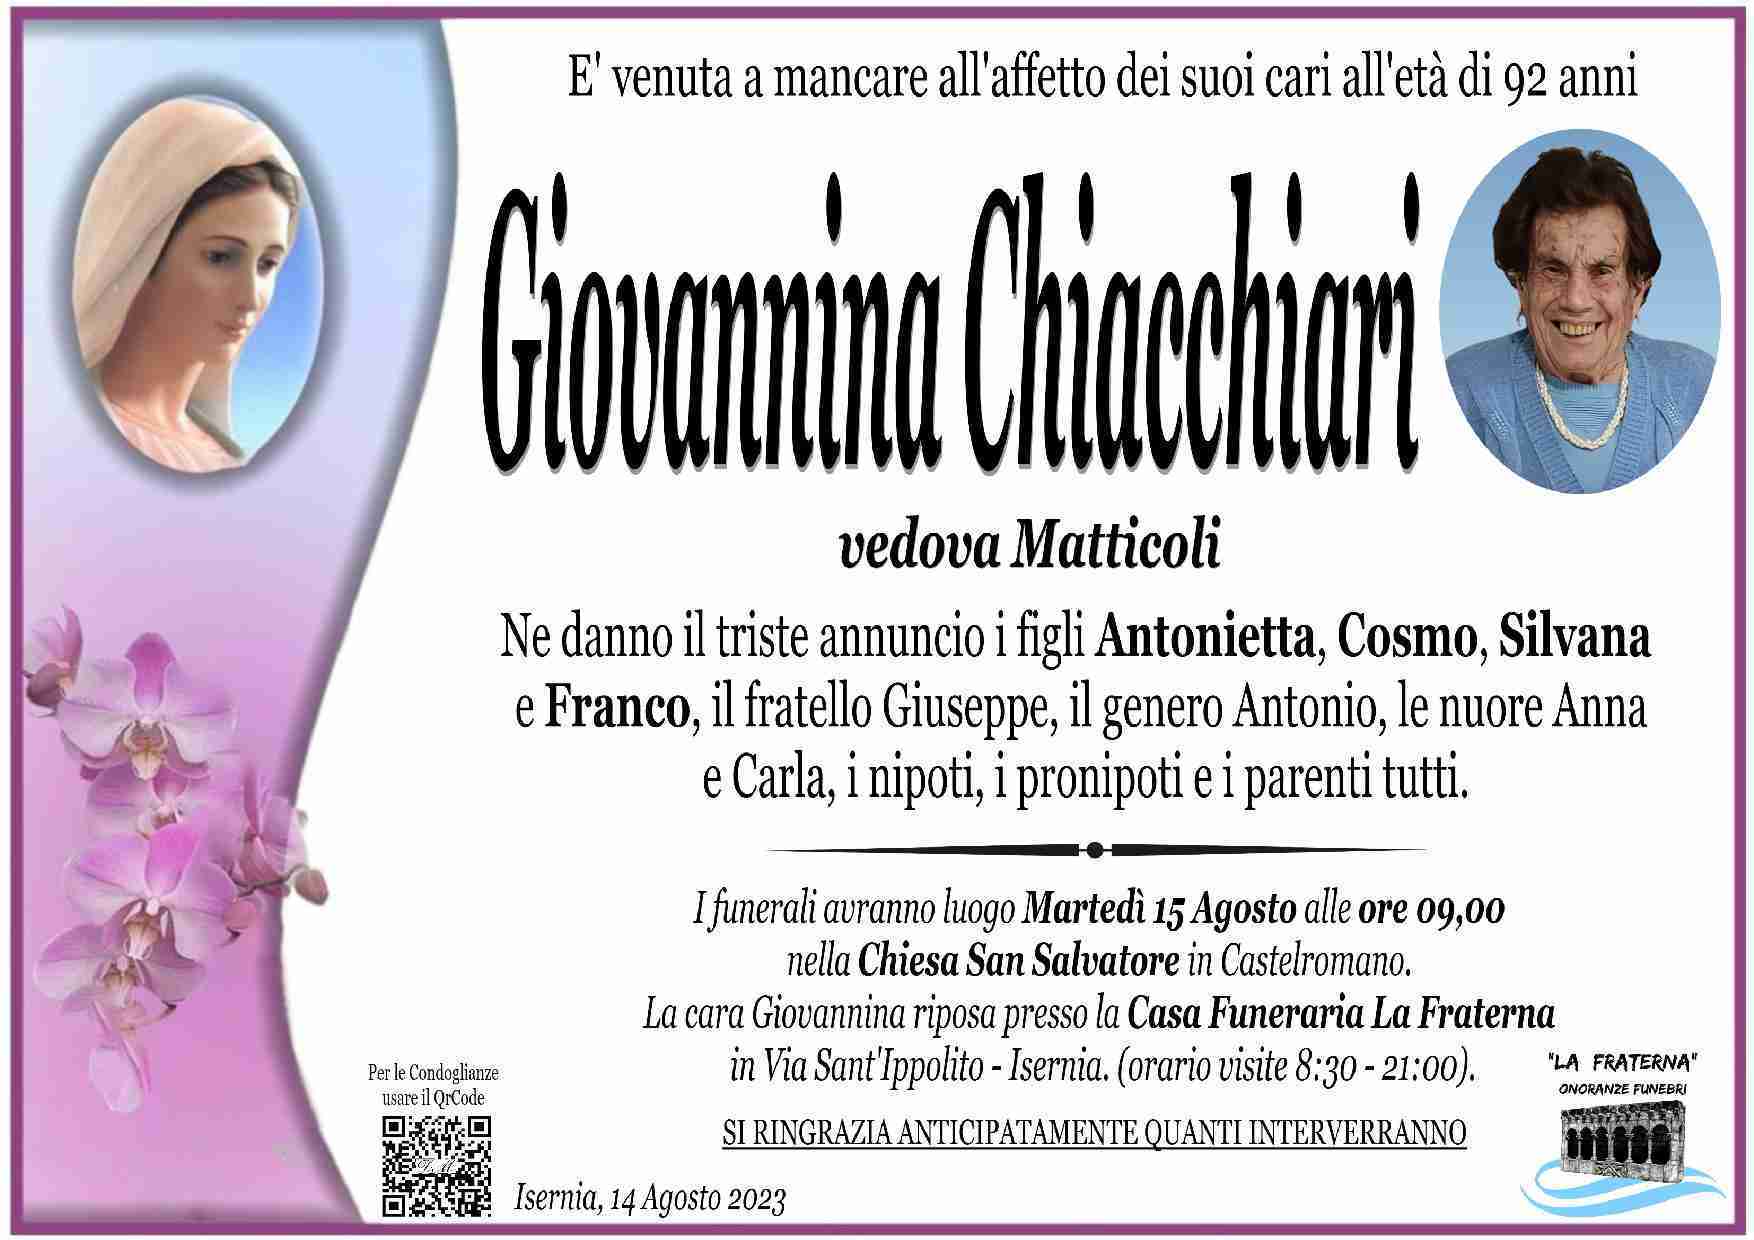 Giovannina Chiacchiari